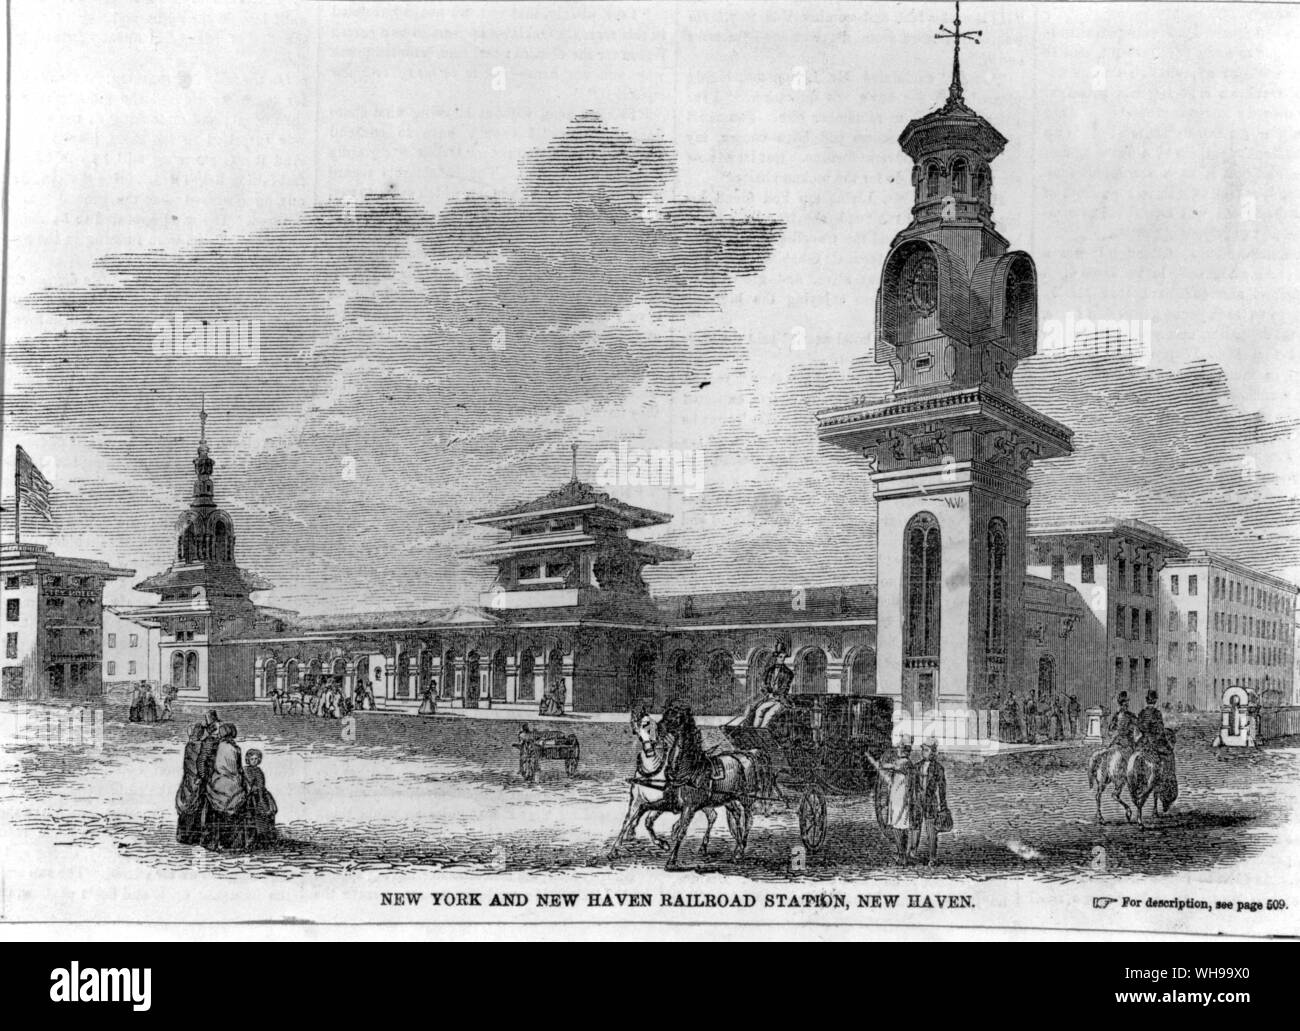 Le New York et New Haven Railroad Station à New Haven - un rare exemple de travaux publics chinoiserie Banque D'Images